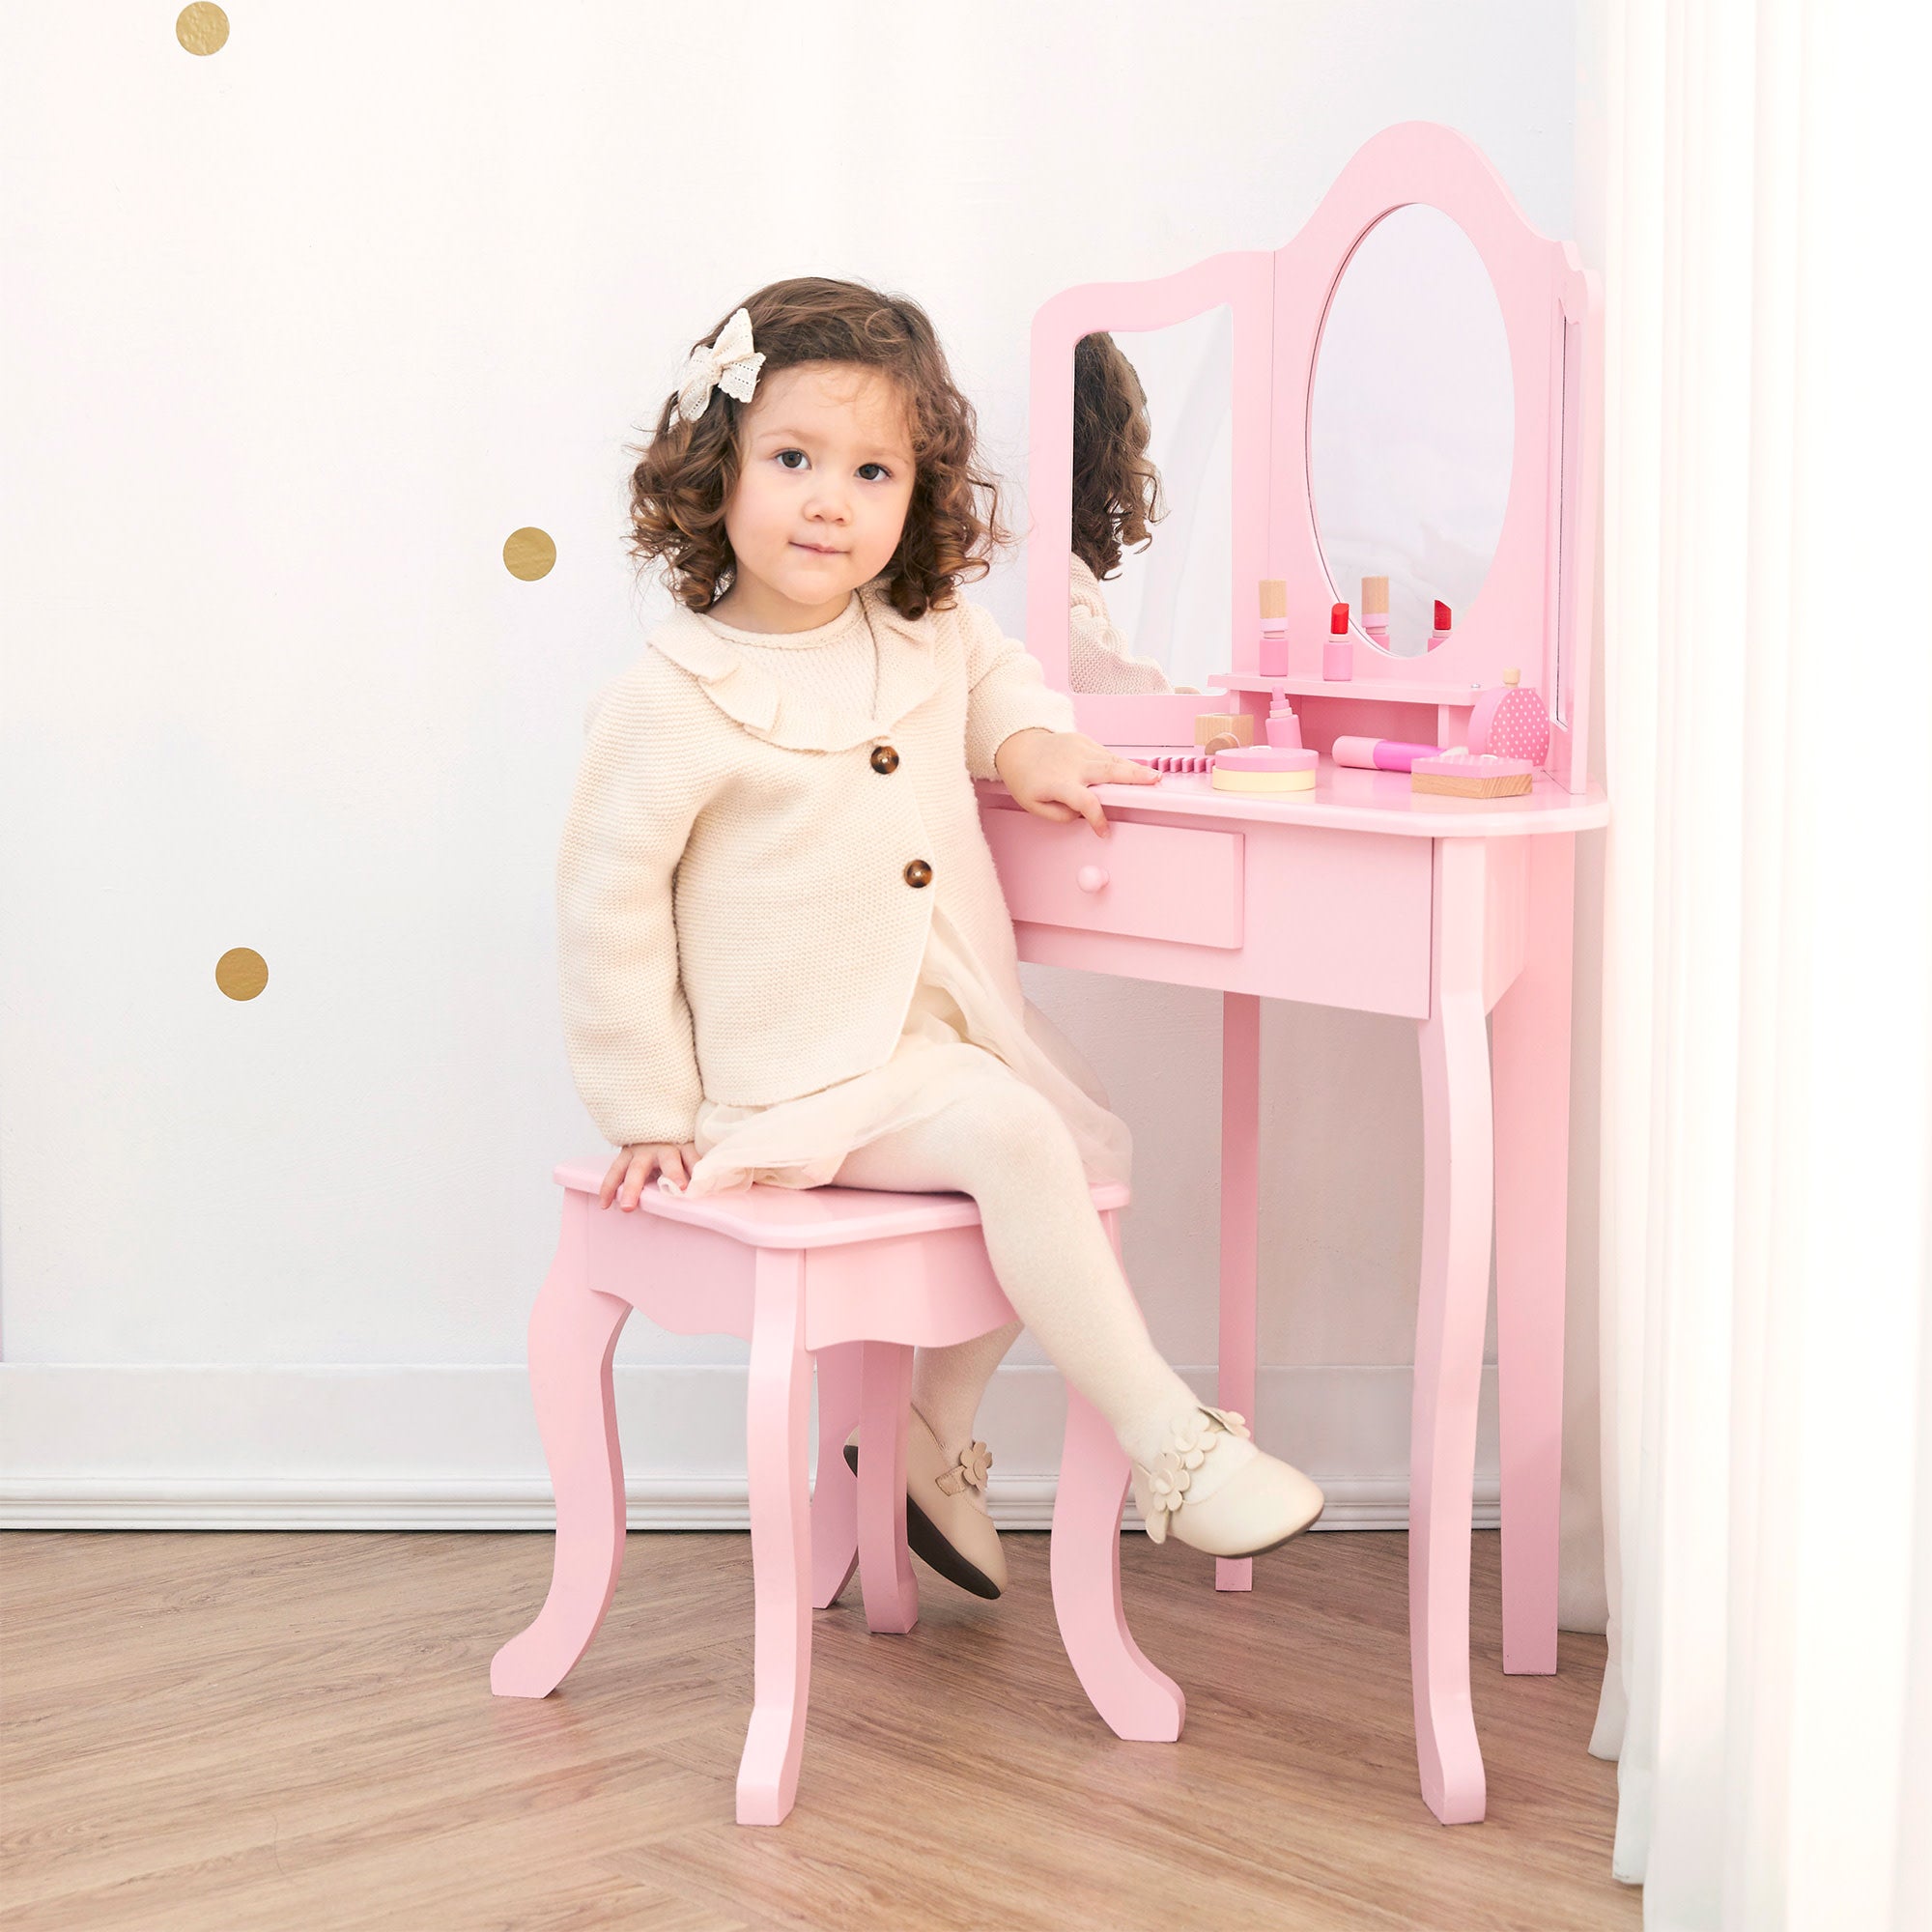 & Tables - Vanity Vanities Makeup Princess Teamson Kids Sets: